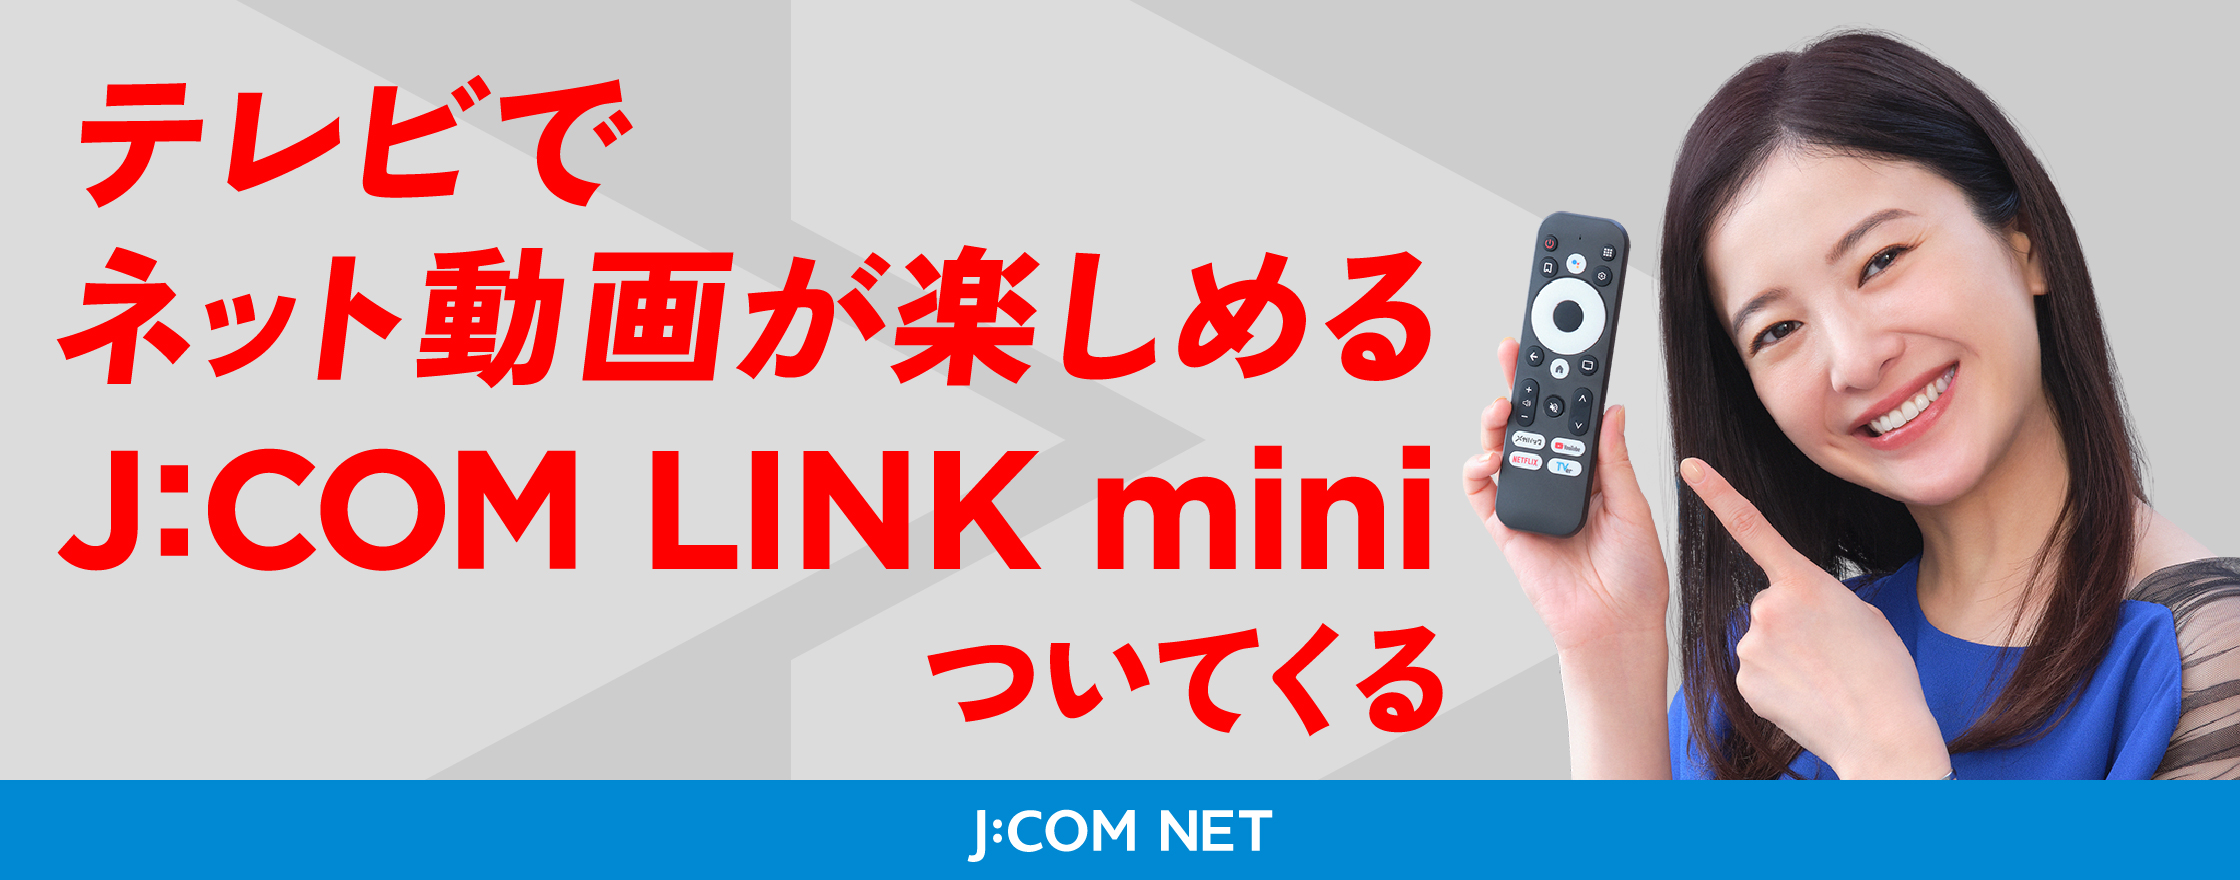 Vem com J:COM LINK mini permite que você curta vídeos online na sua TV.